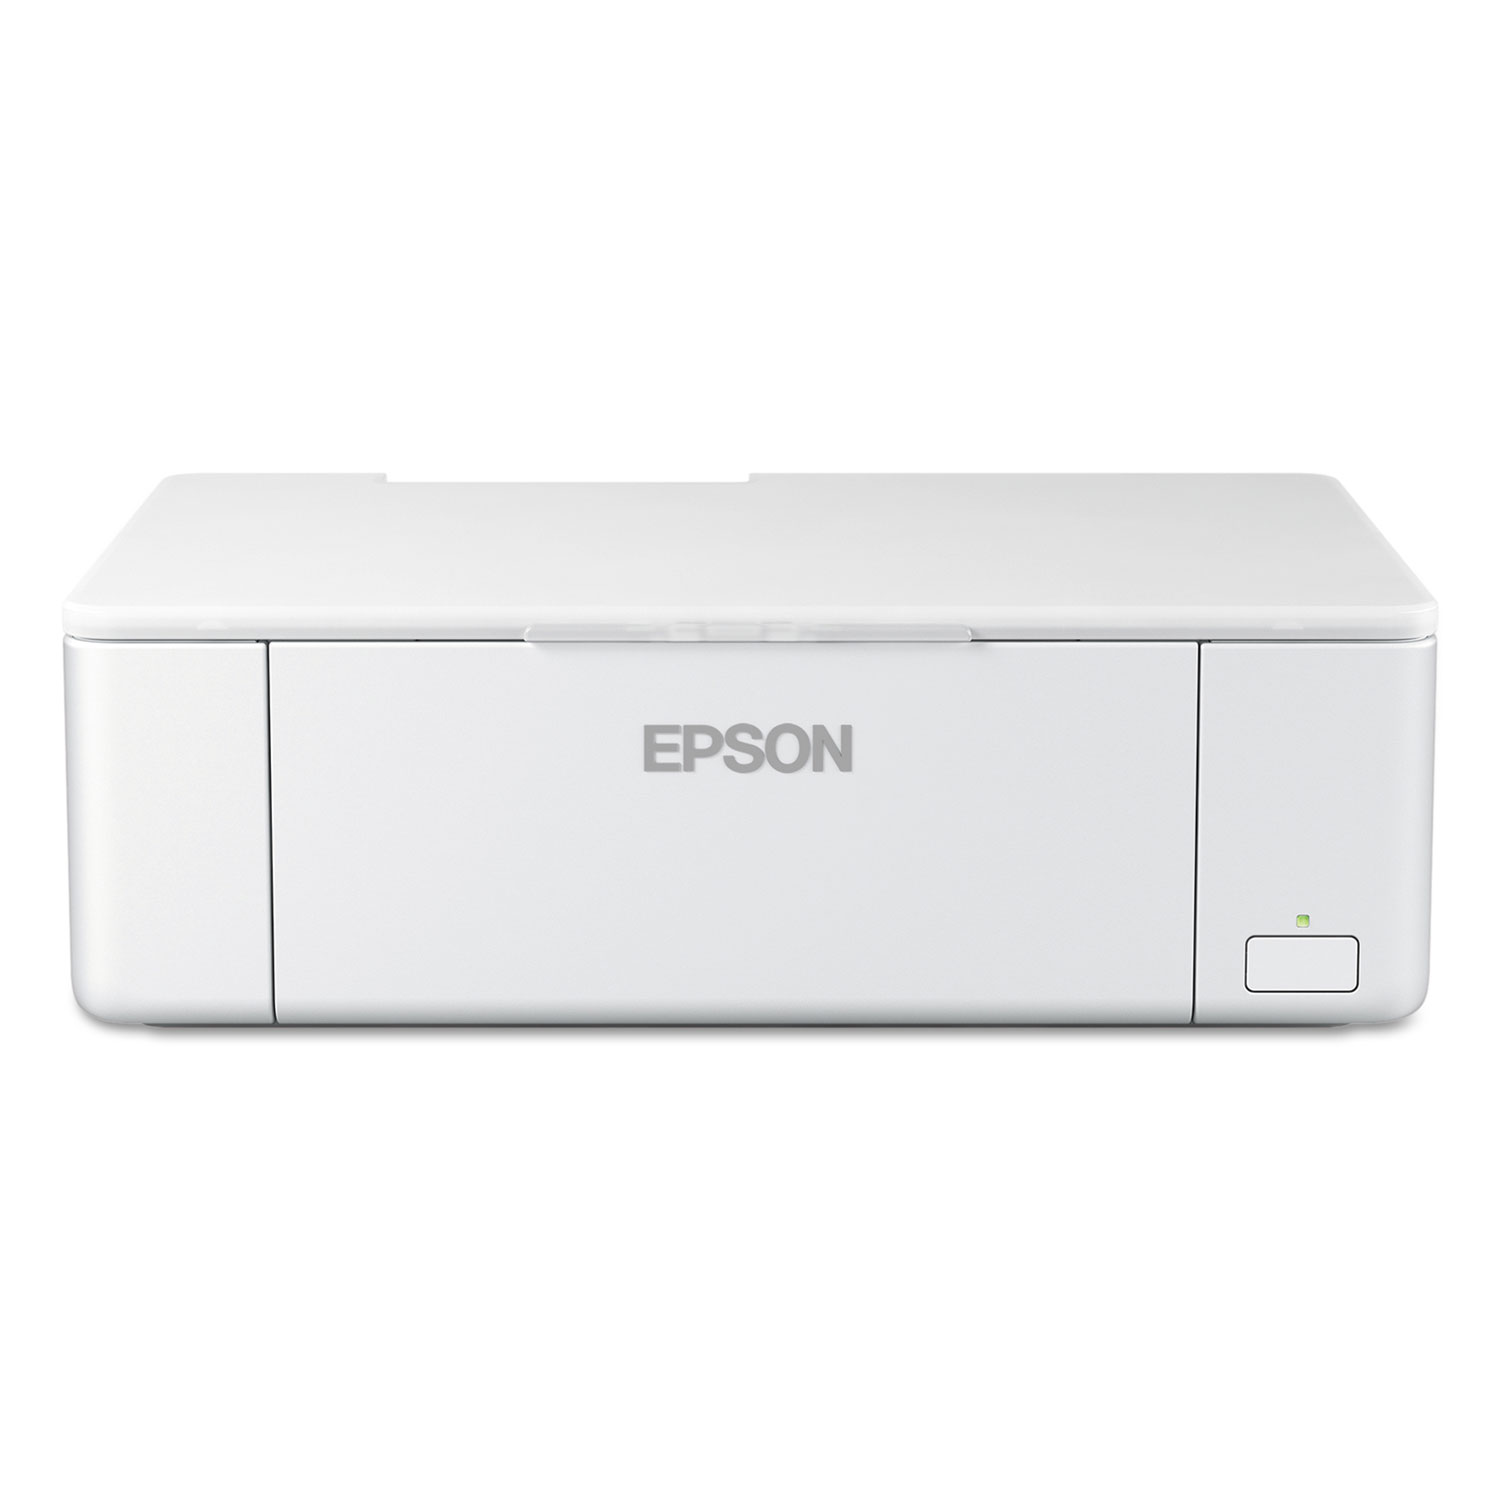  Epson C11CE84201 PictureMate PM-400 Wireless Personal Photo Lab, White (EPSC11CE84201) 